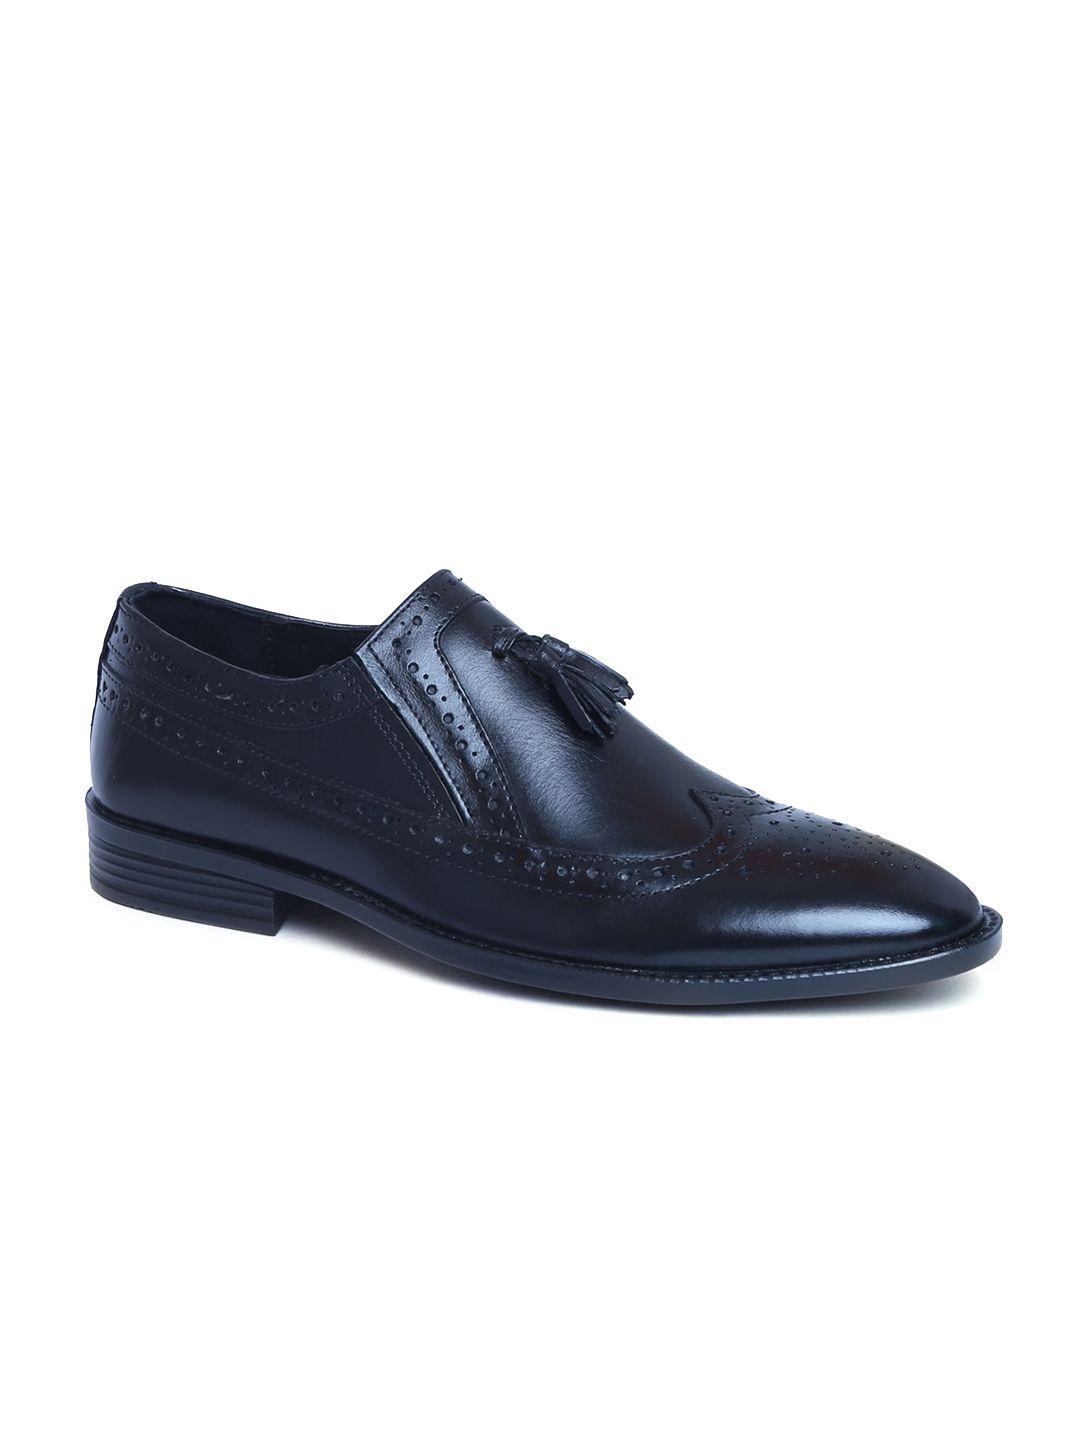 zoom shoes men black solid leather formal loafer